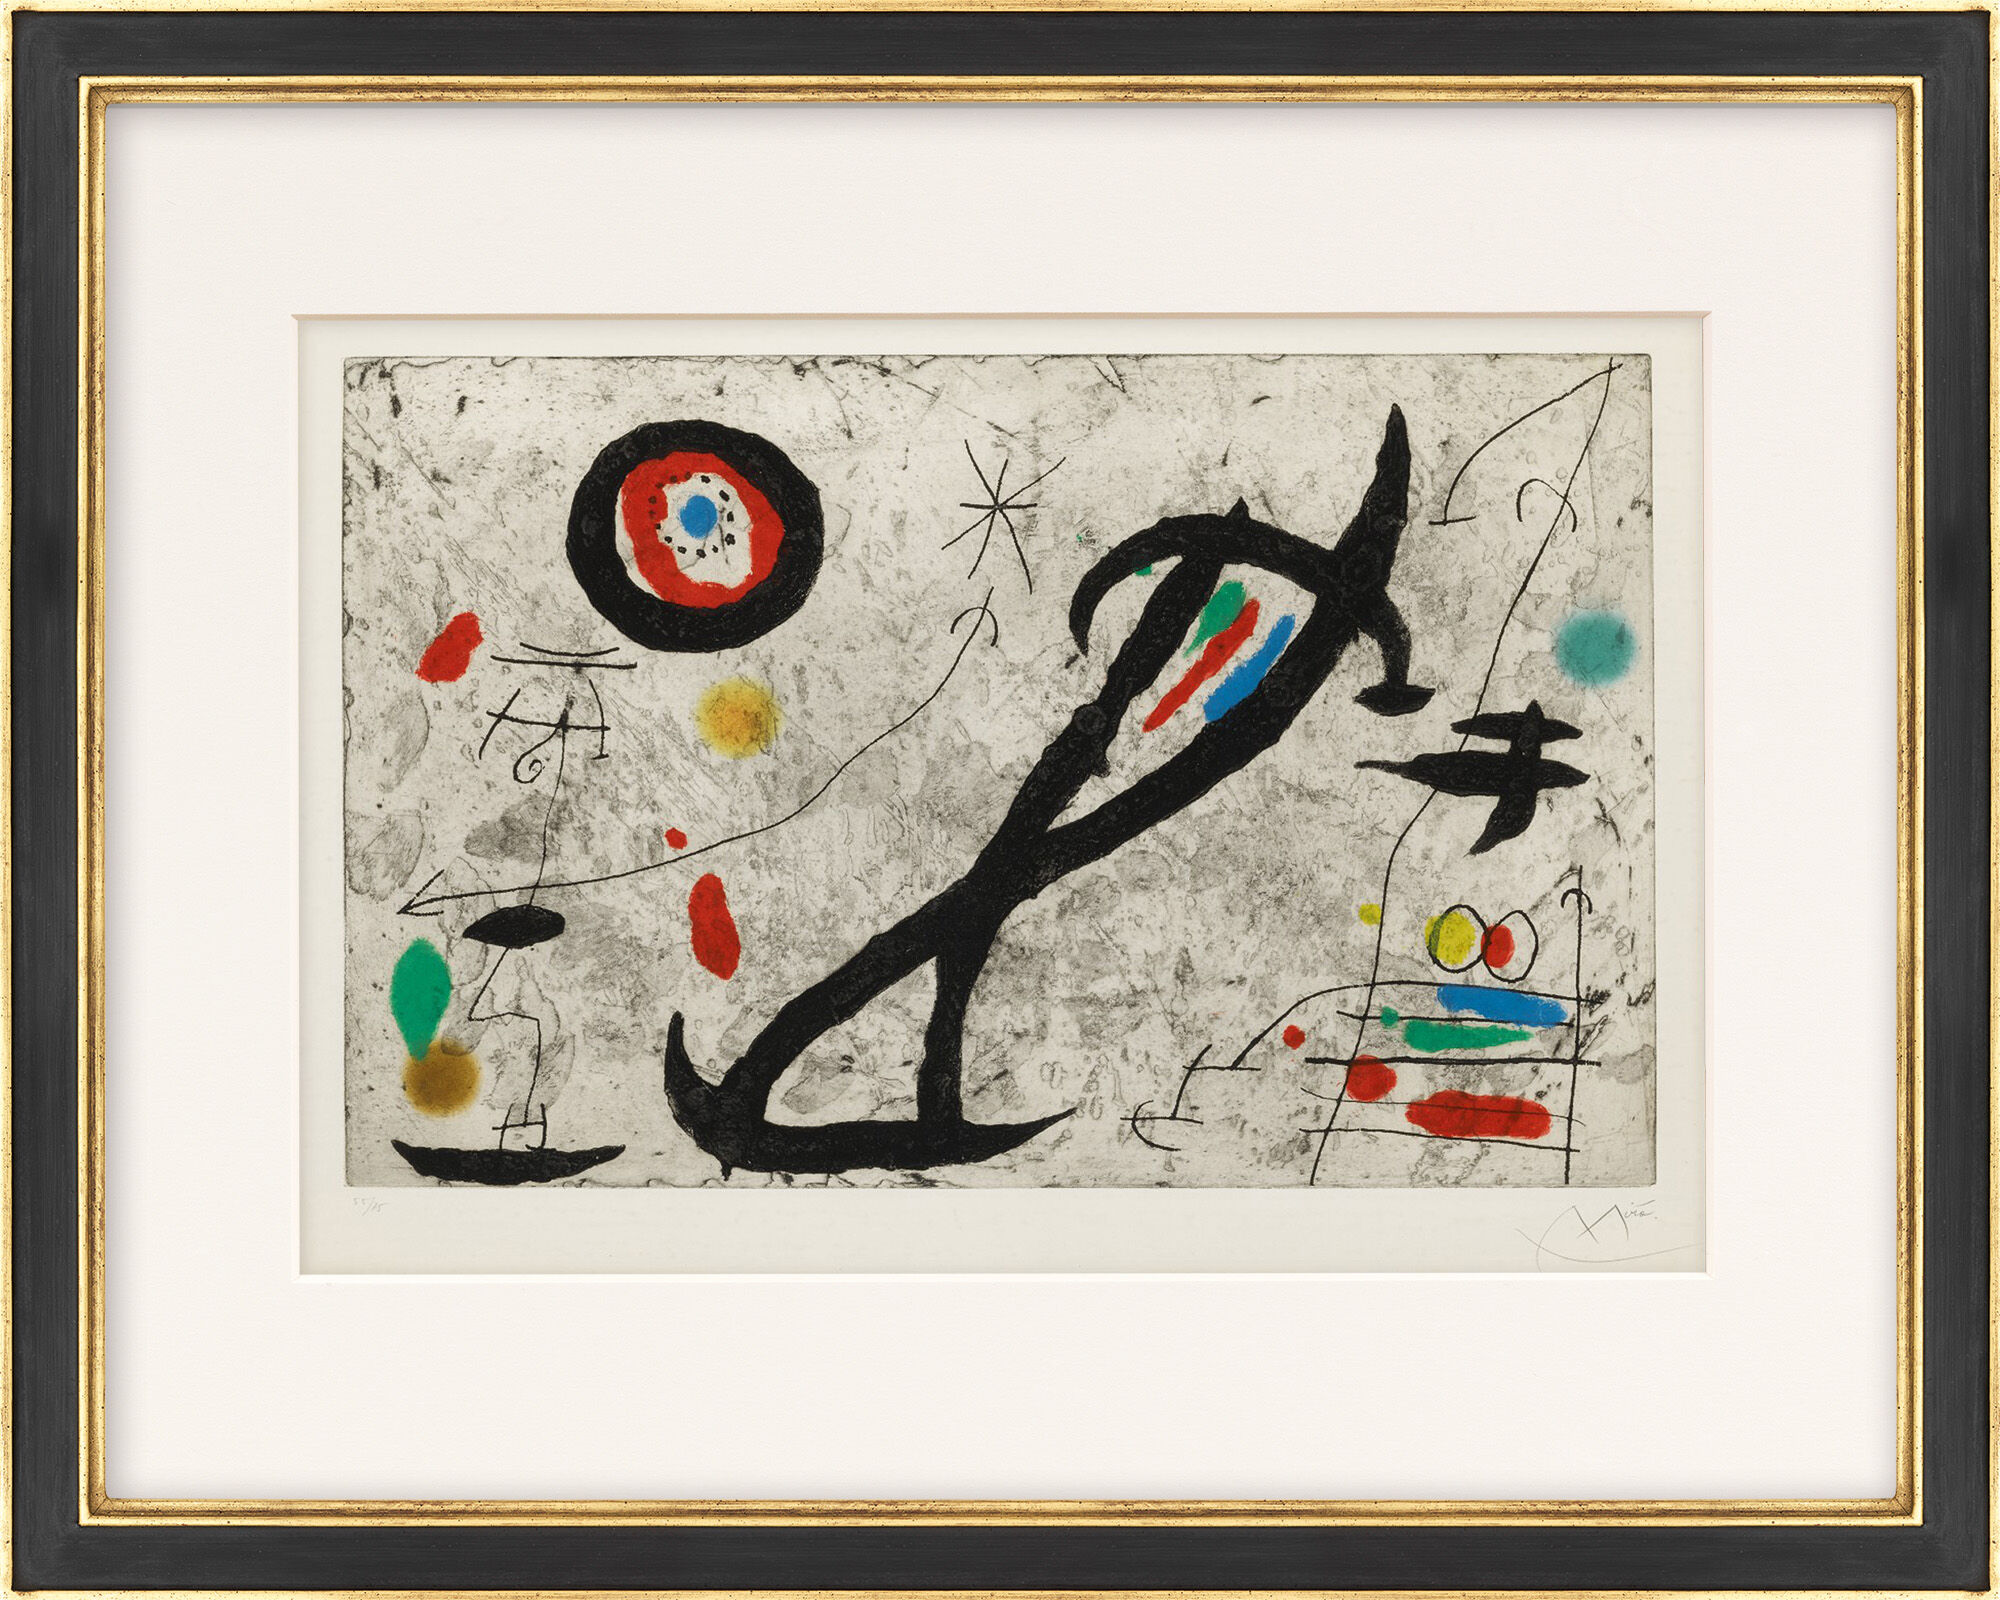 Picture "Tracé sur la paroi V" (1967) by Joan Miró